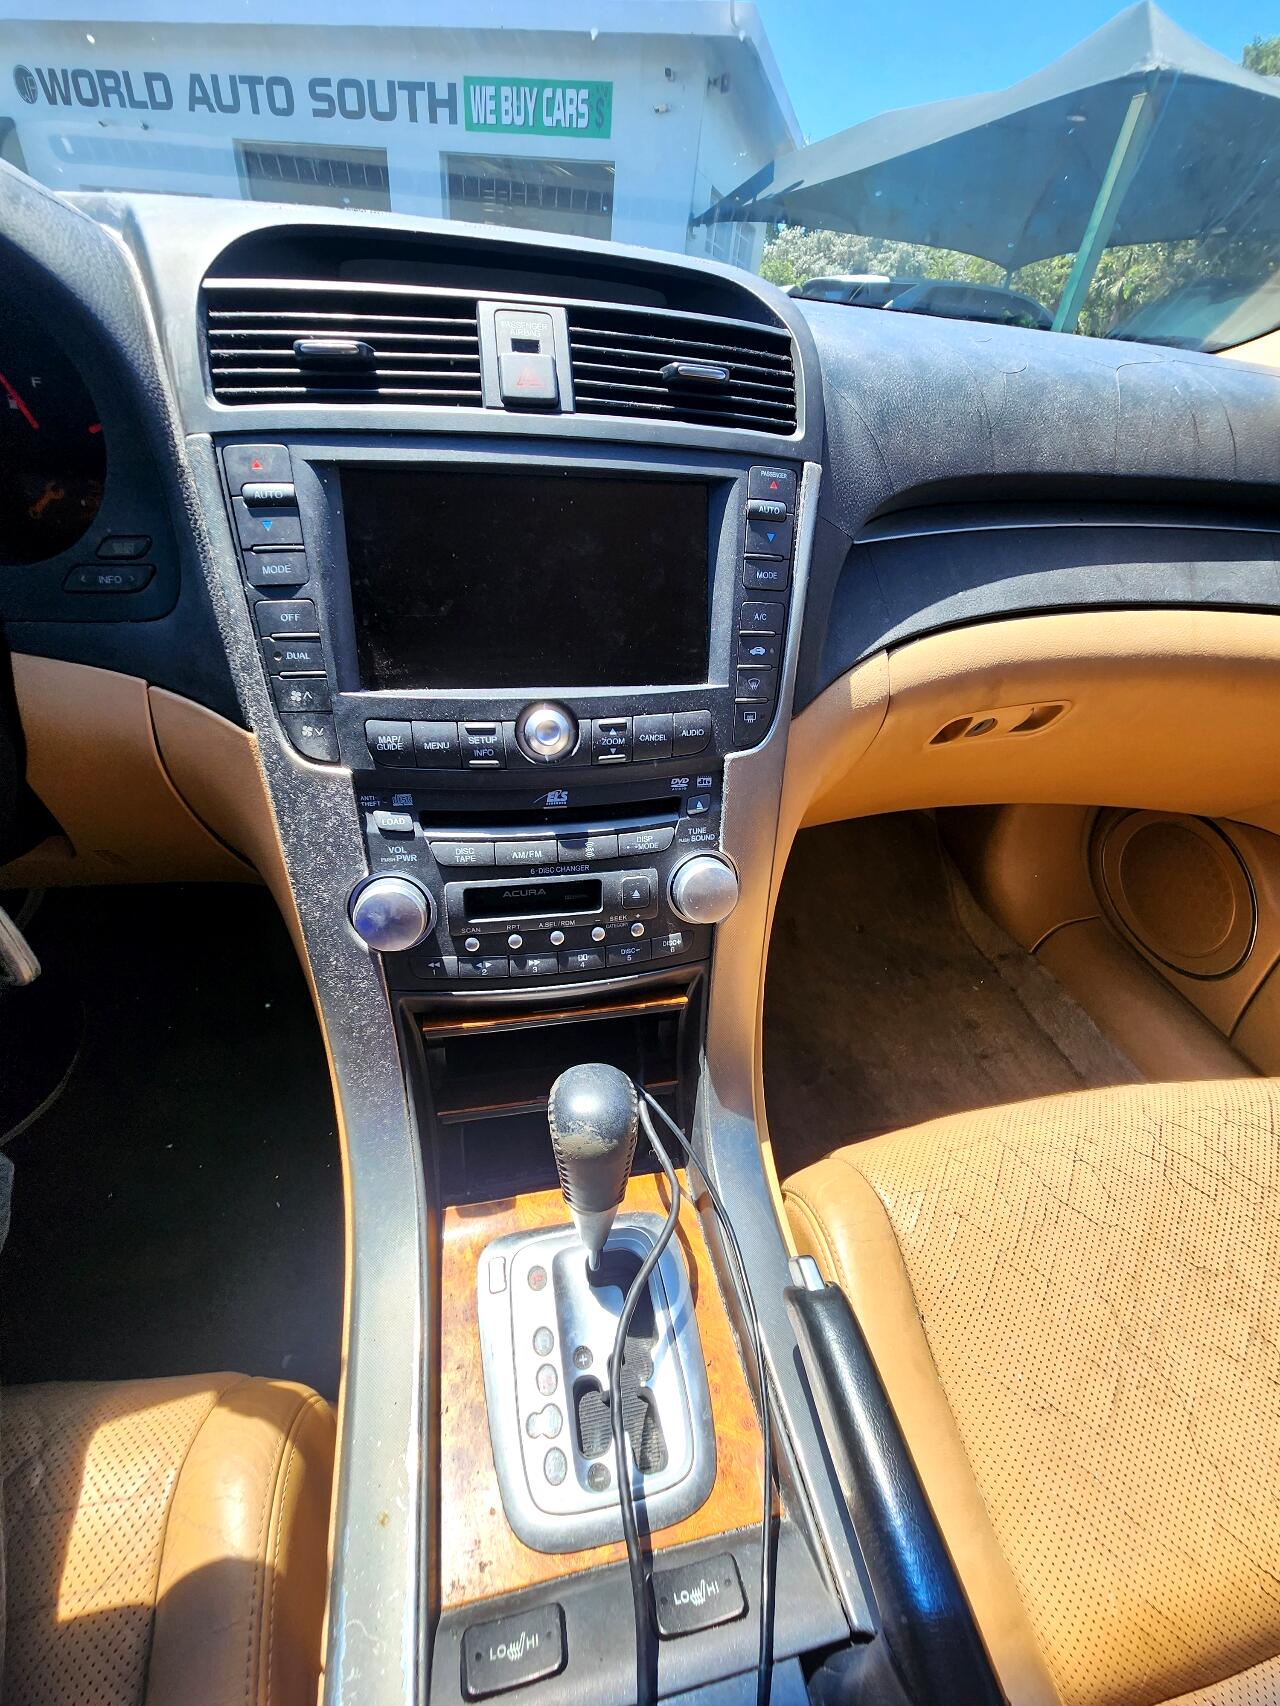 2006 ACURA TL Sedan - $1,999